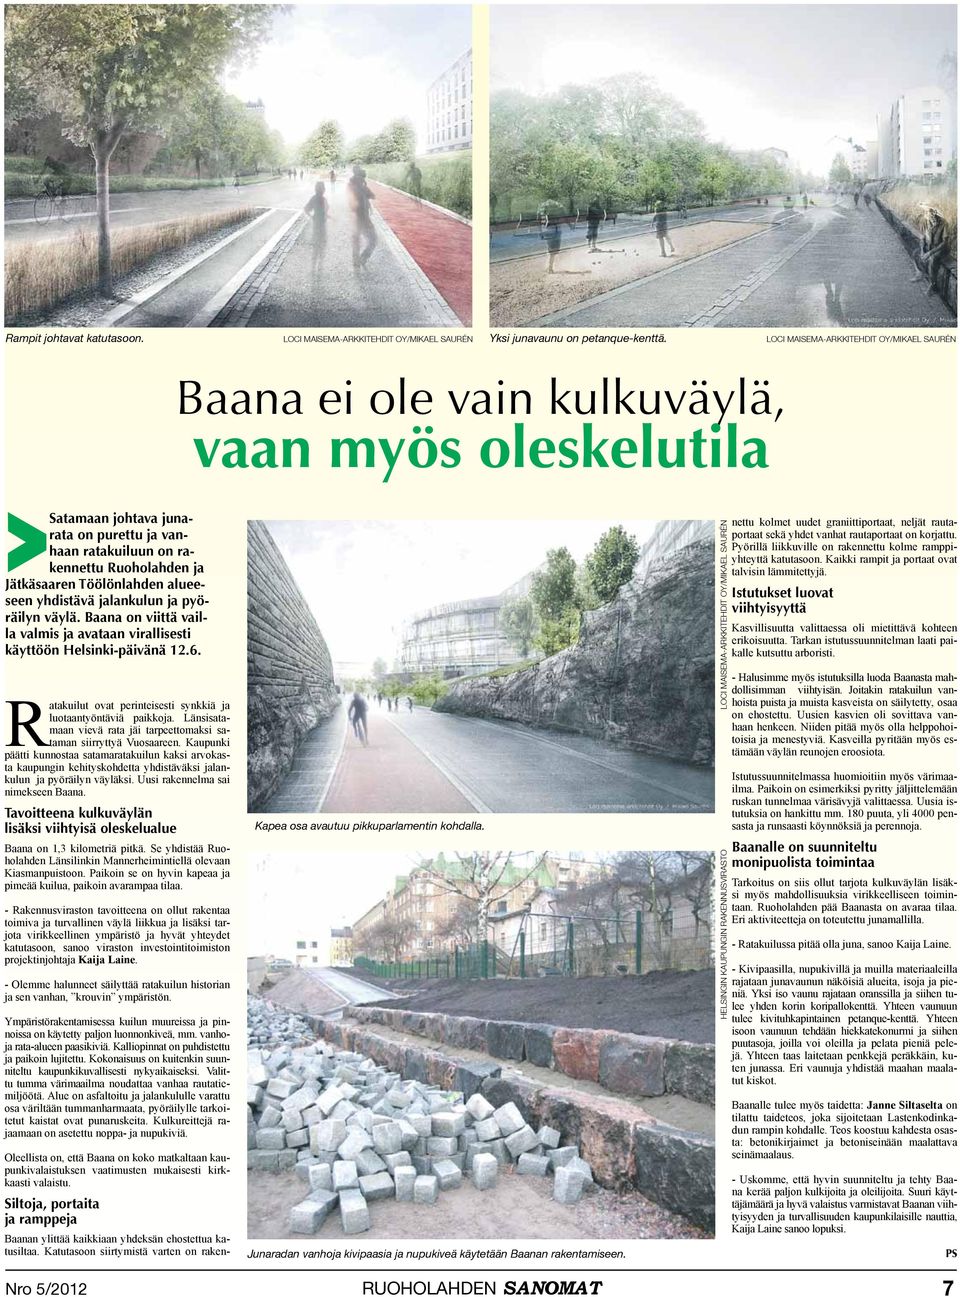 Töölönlahden alueeseen yhdistävä jalankulun ja pyöräilyn väylä. Baana on viittä vailla valmis ja avataan virallisesti käyttöön Helsinki-päivänä 12.6.